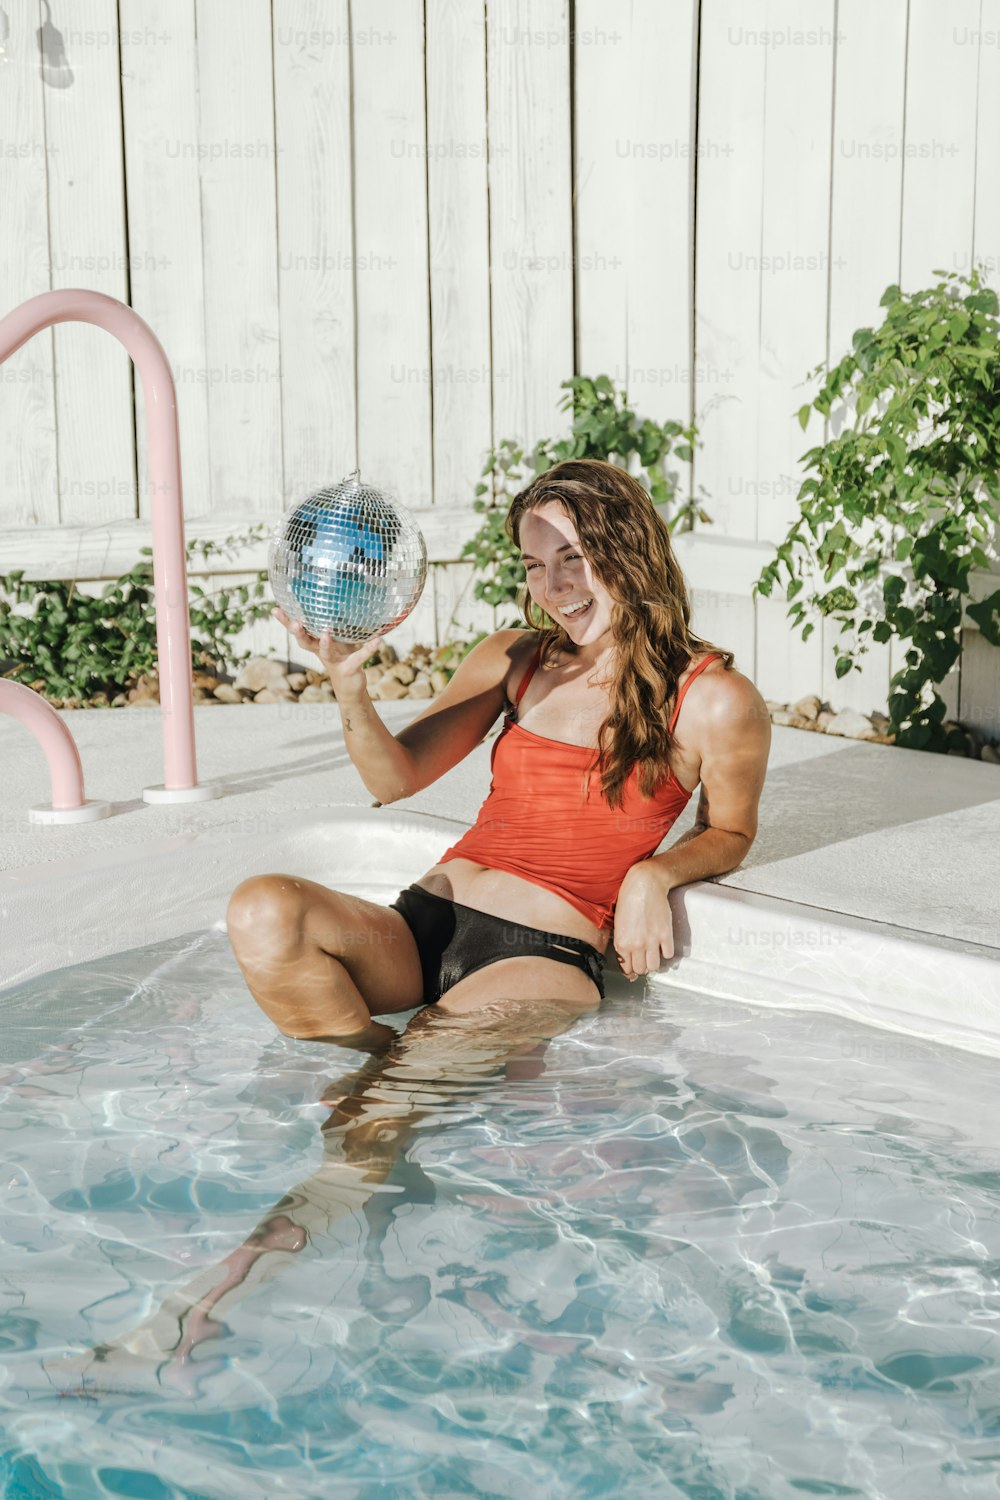 Una mujer sentada en una piscina sosteniendo una bola de discoteca